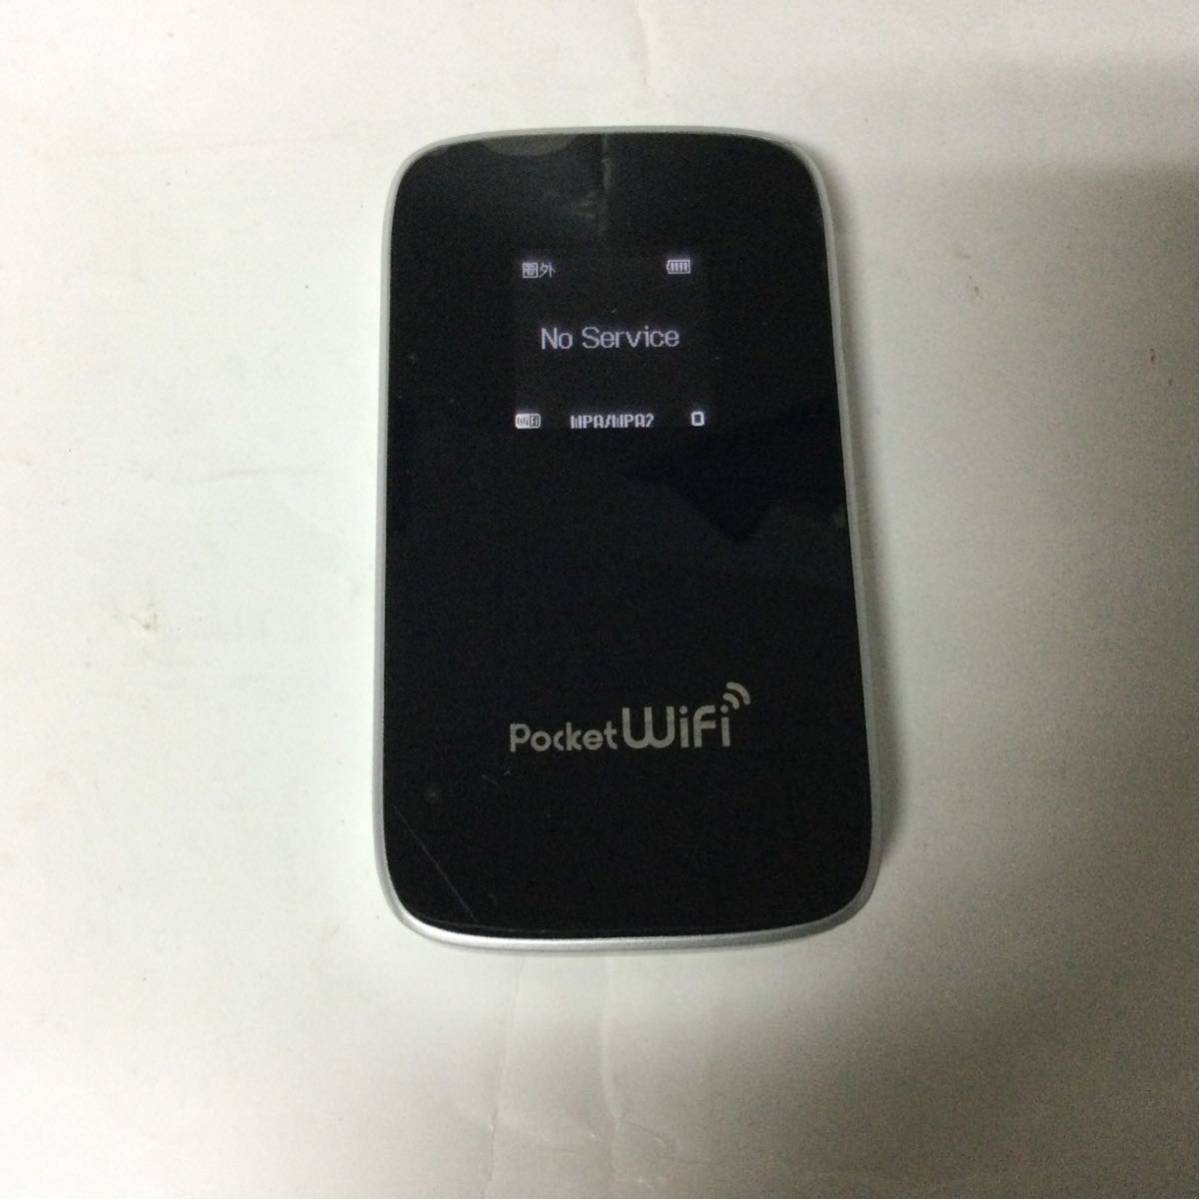 新作アイテム毎日更新 希望者のみラッピング無料 Huawei Pocket WiFi GL01P 動作未確認 モバイルルーター ポケットWi-Fi rajpstraga.pl rajpstraga.pl